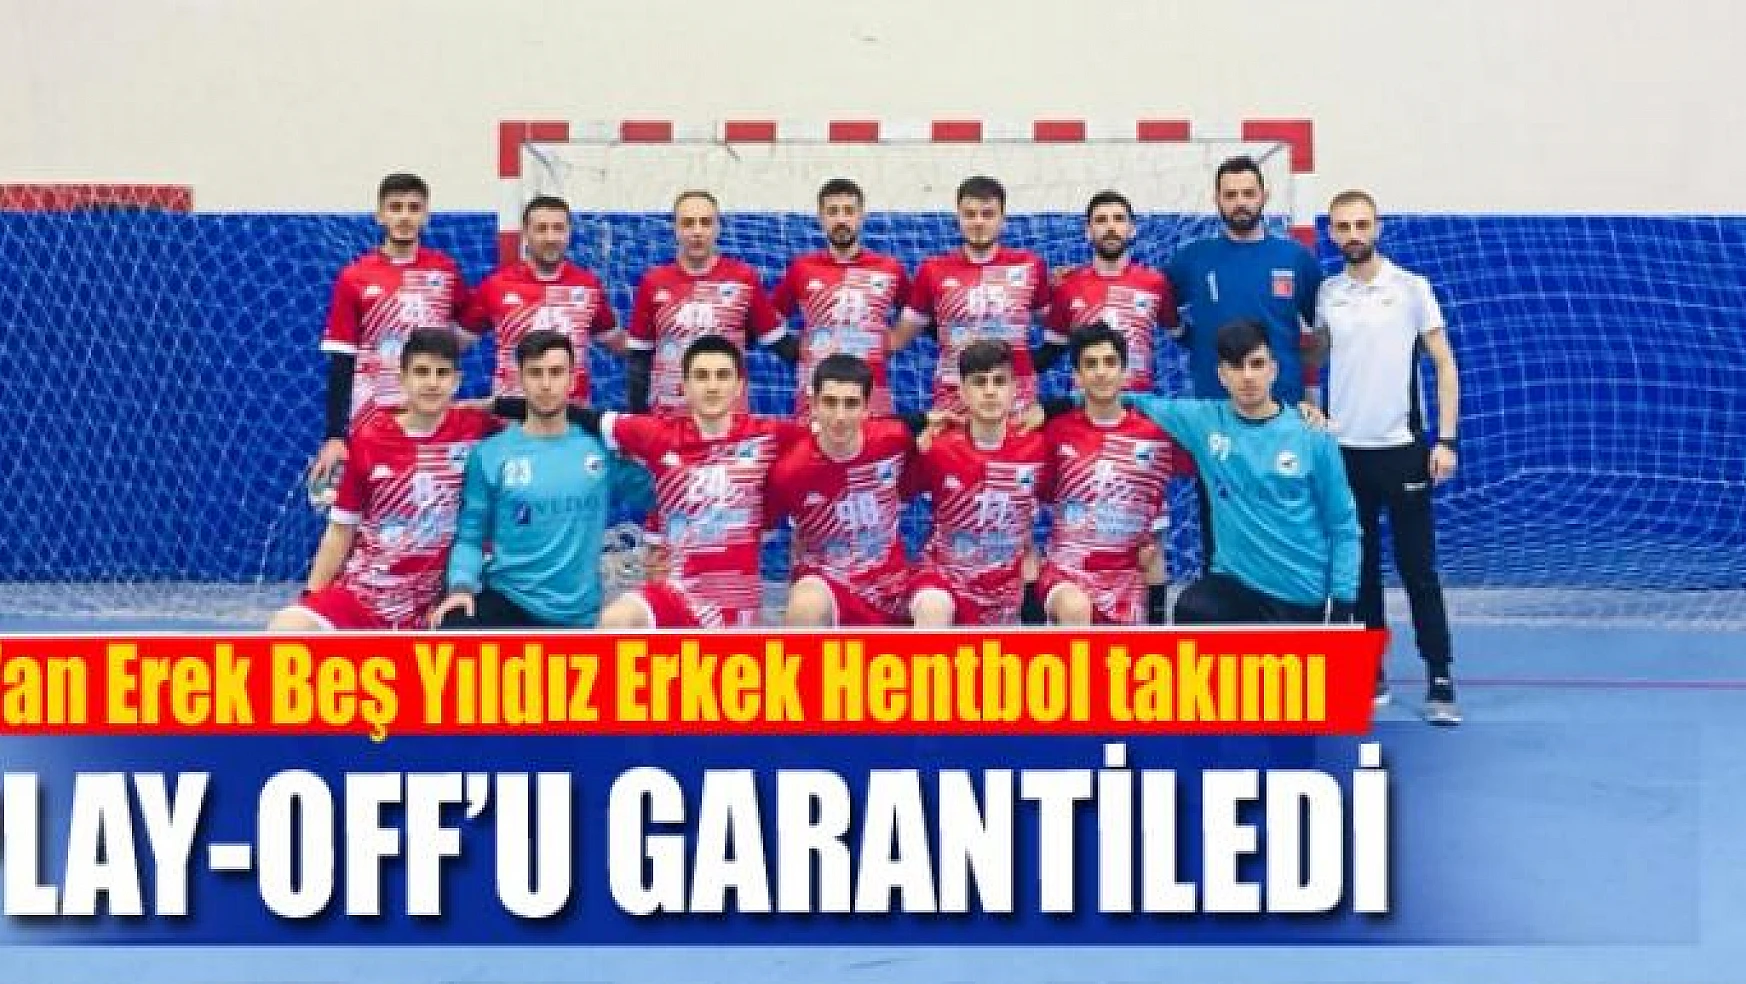 Van Erek Beş Yıldız Erkek Hentbol takımı play-off'u garantiledi